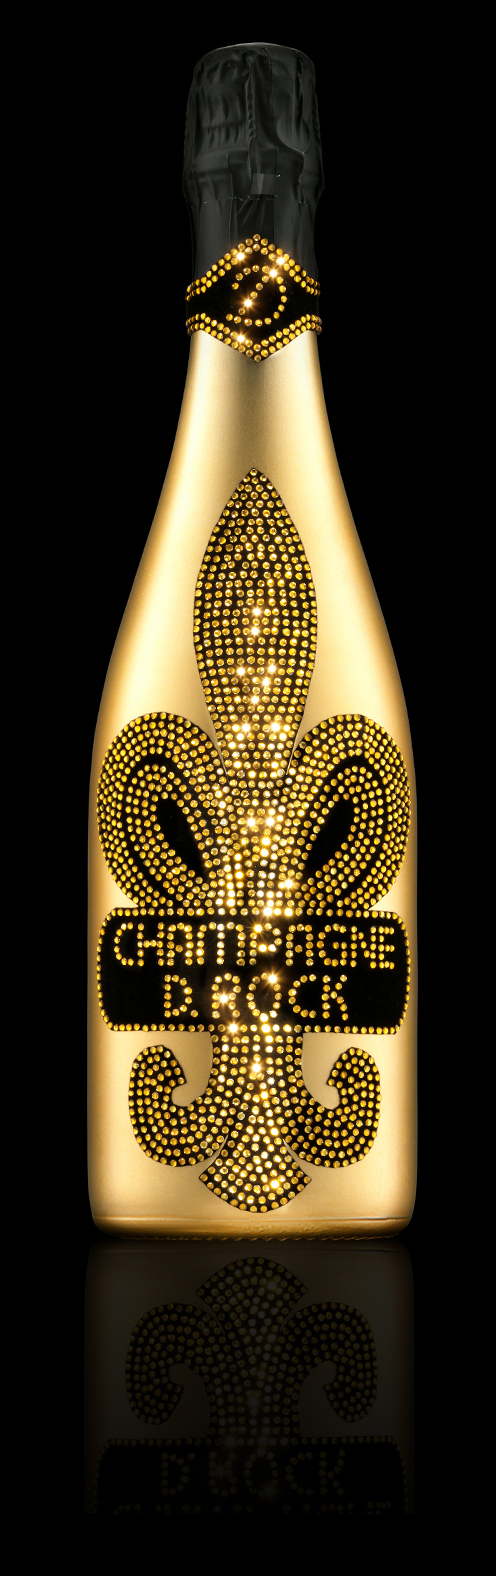 D.Rock Champagne | Taste the Luxury